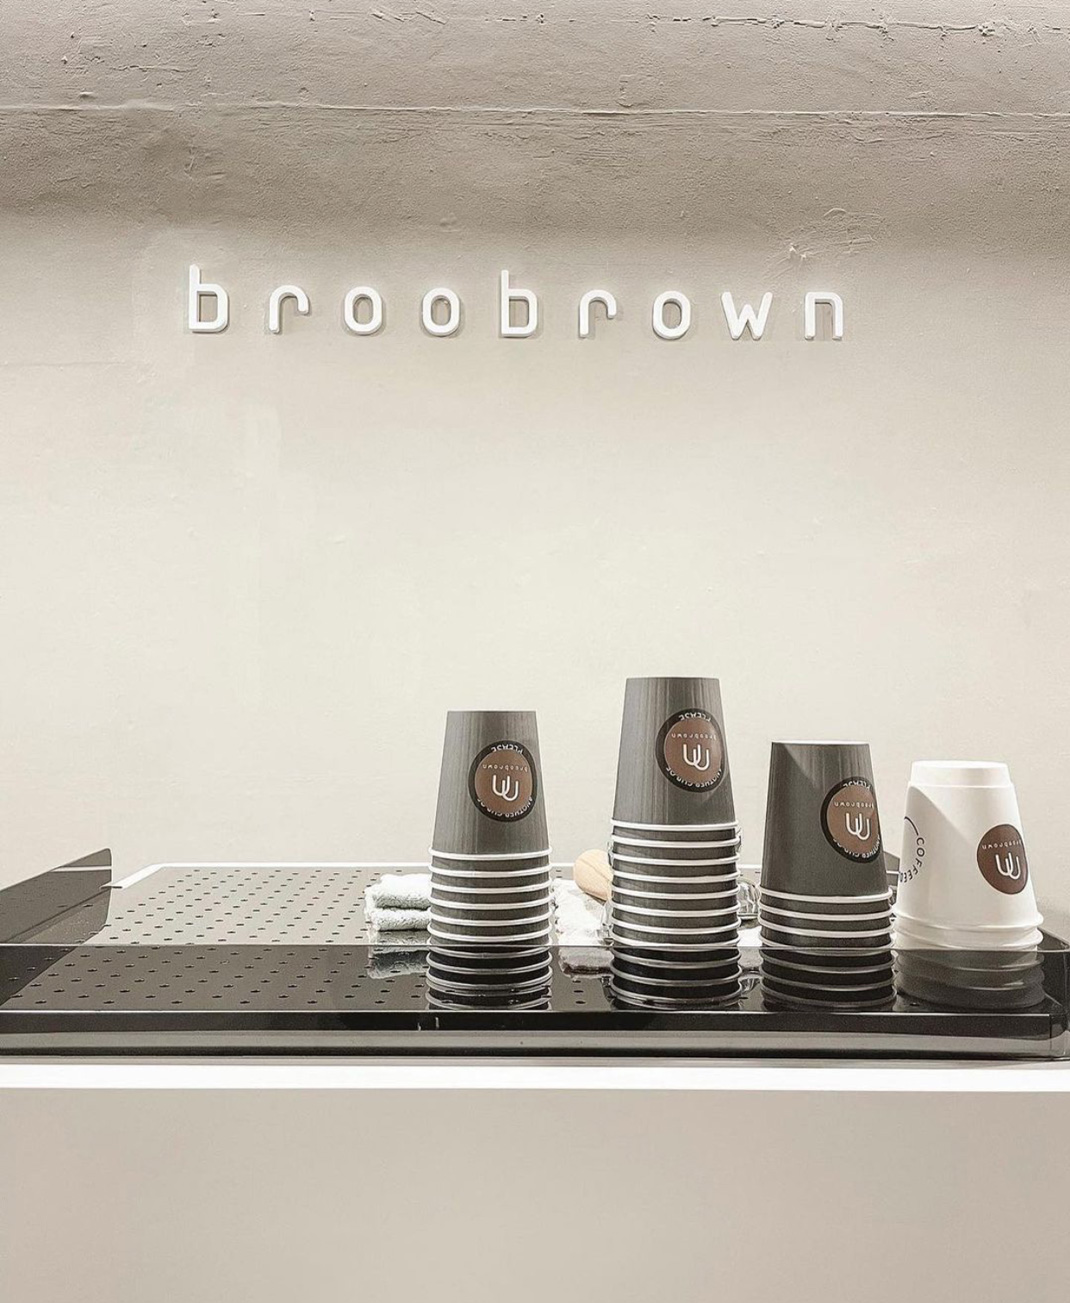 咖啡店BrooBrown Coffee 泰国 曼谷 咖啡店 logo设计 vi设计 空间设计